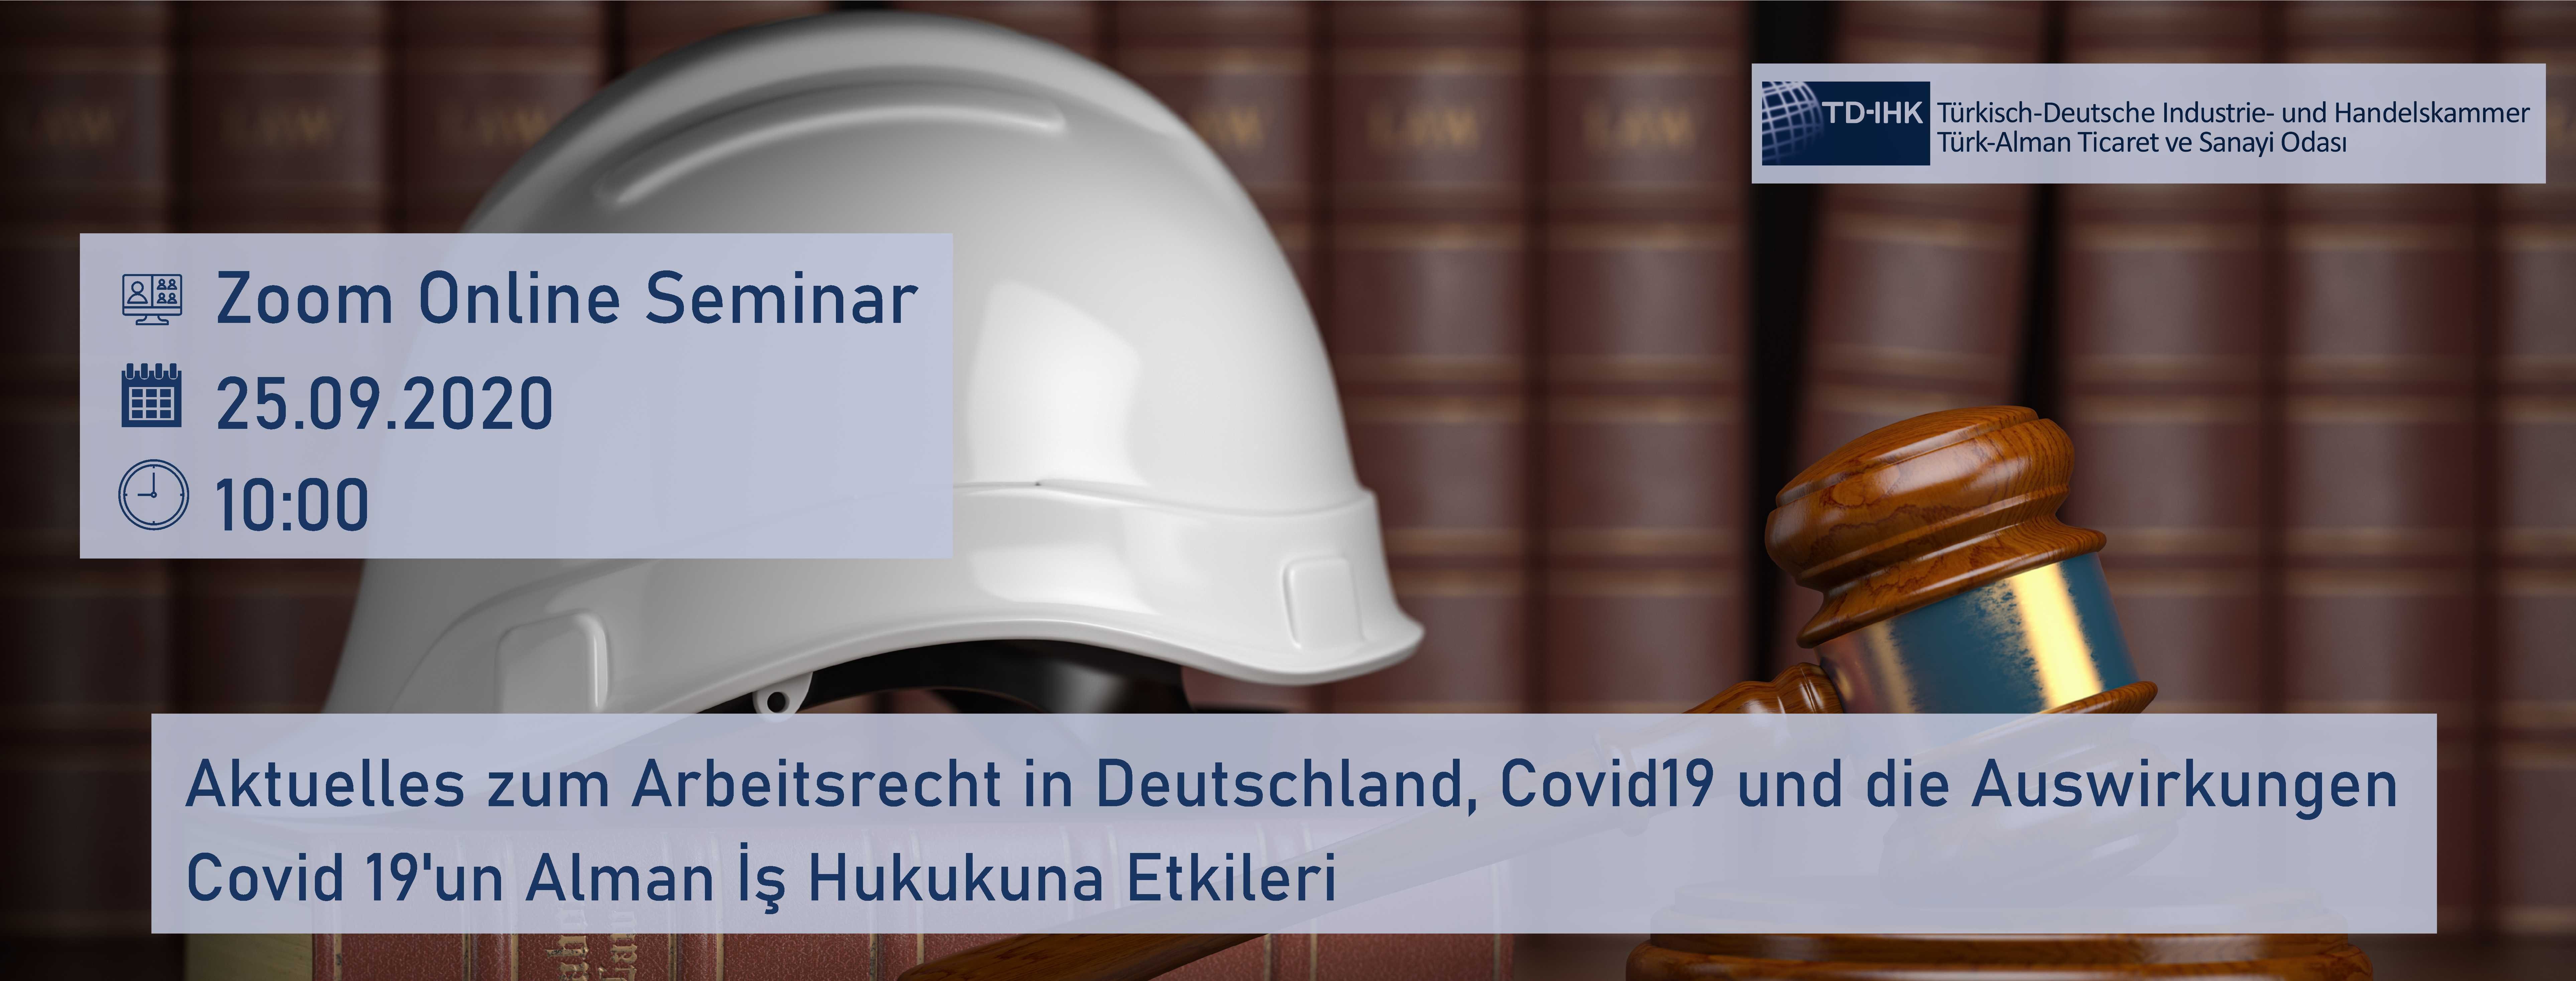 TD-IHK Zoom Online Seminar: Aktuelles zum Arbeitsrecht in Deutschland